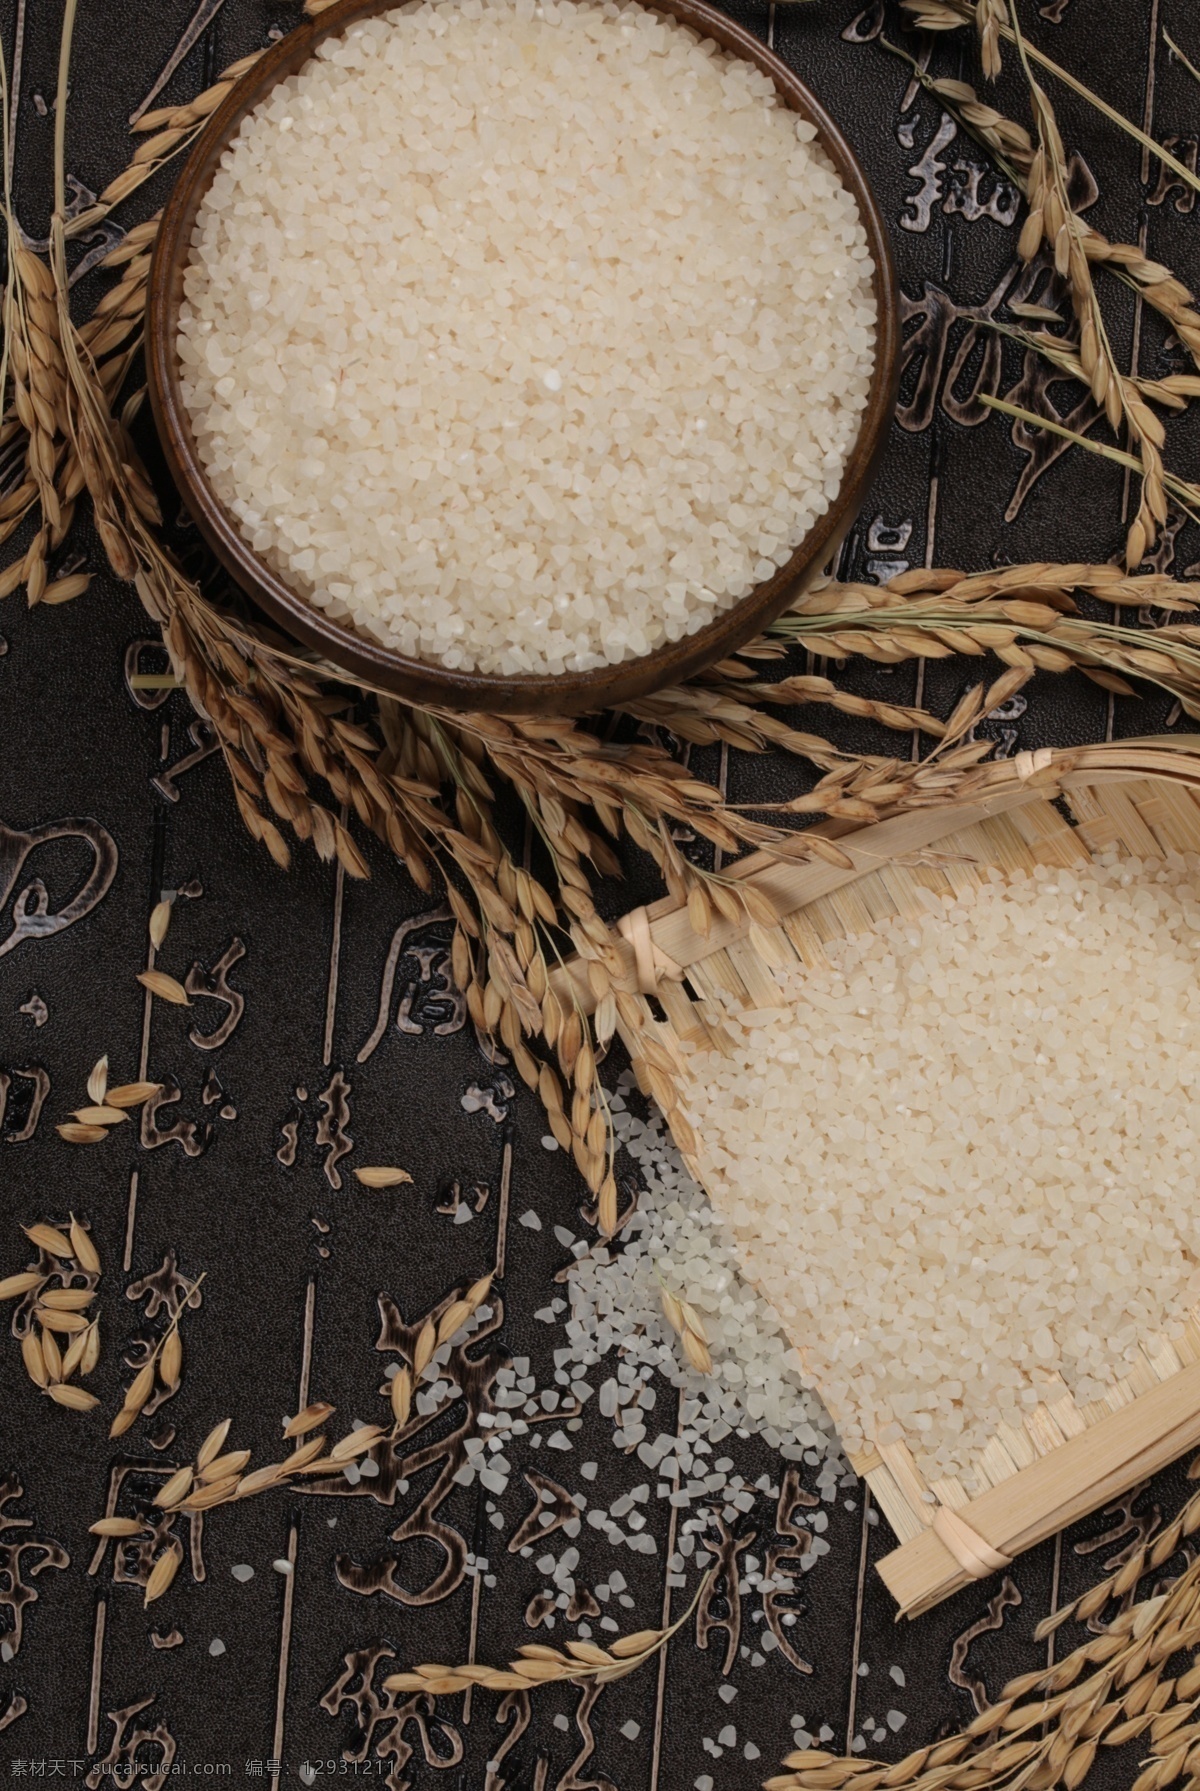 米 大米 稻米 粮食 杂粮 原粮 农作物 五谷杂粮 食物原料 保健食材 农副产品 优质大米 有机大米 绿色大米 粥米 碎米 餐饮美食